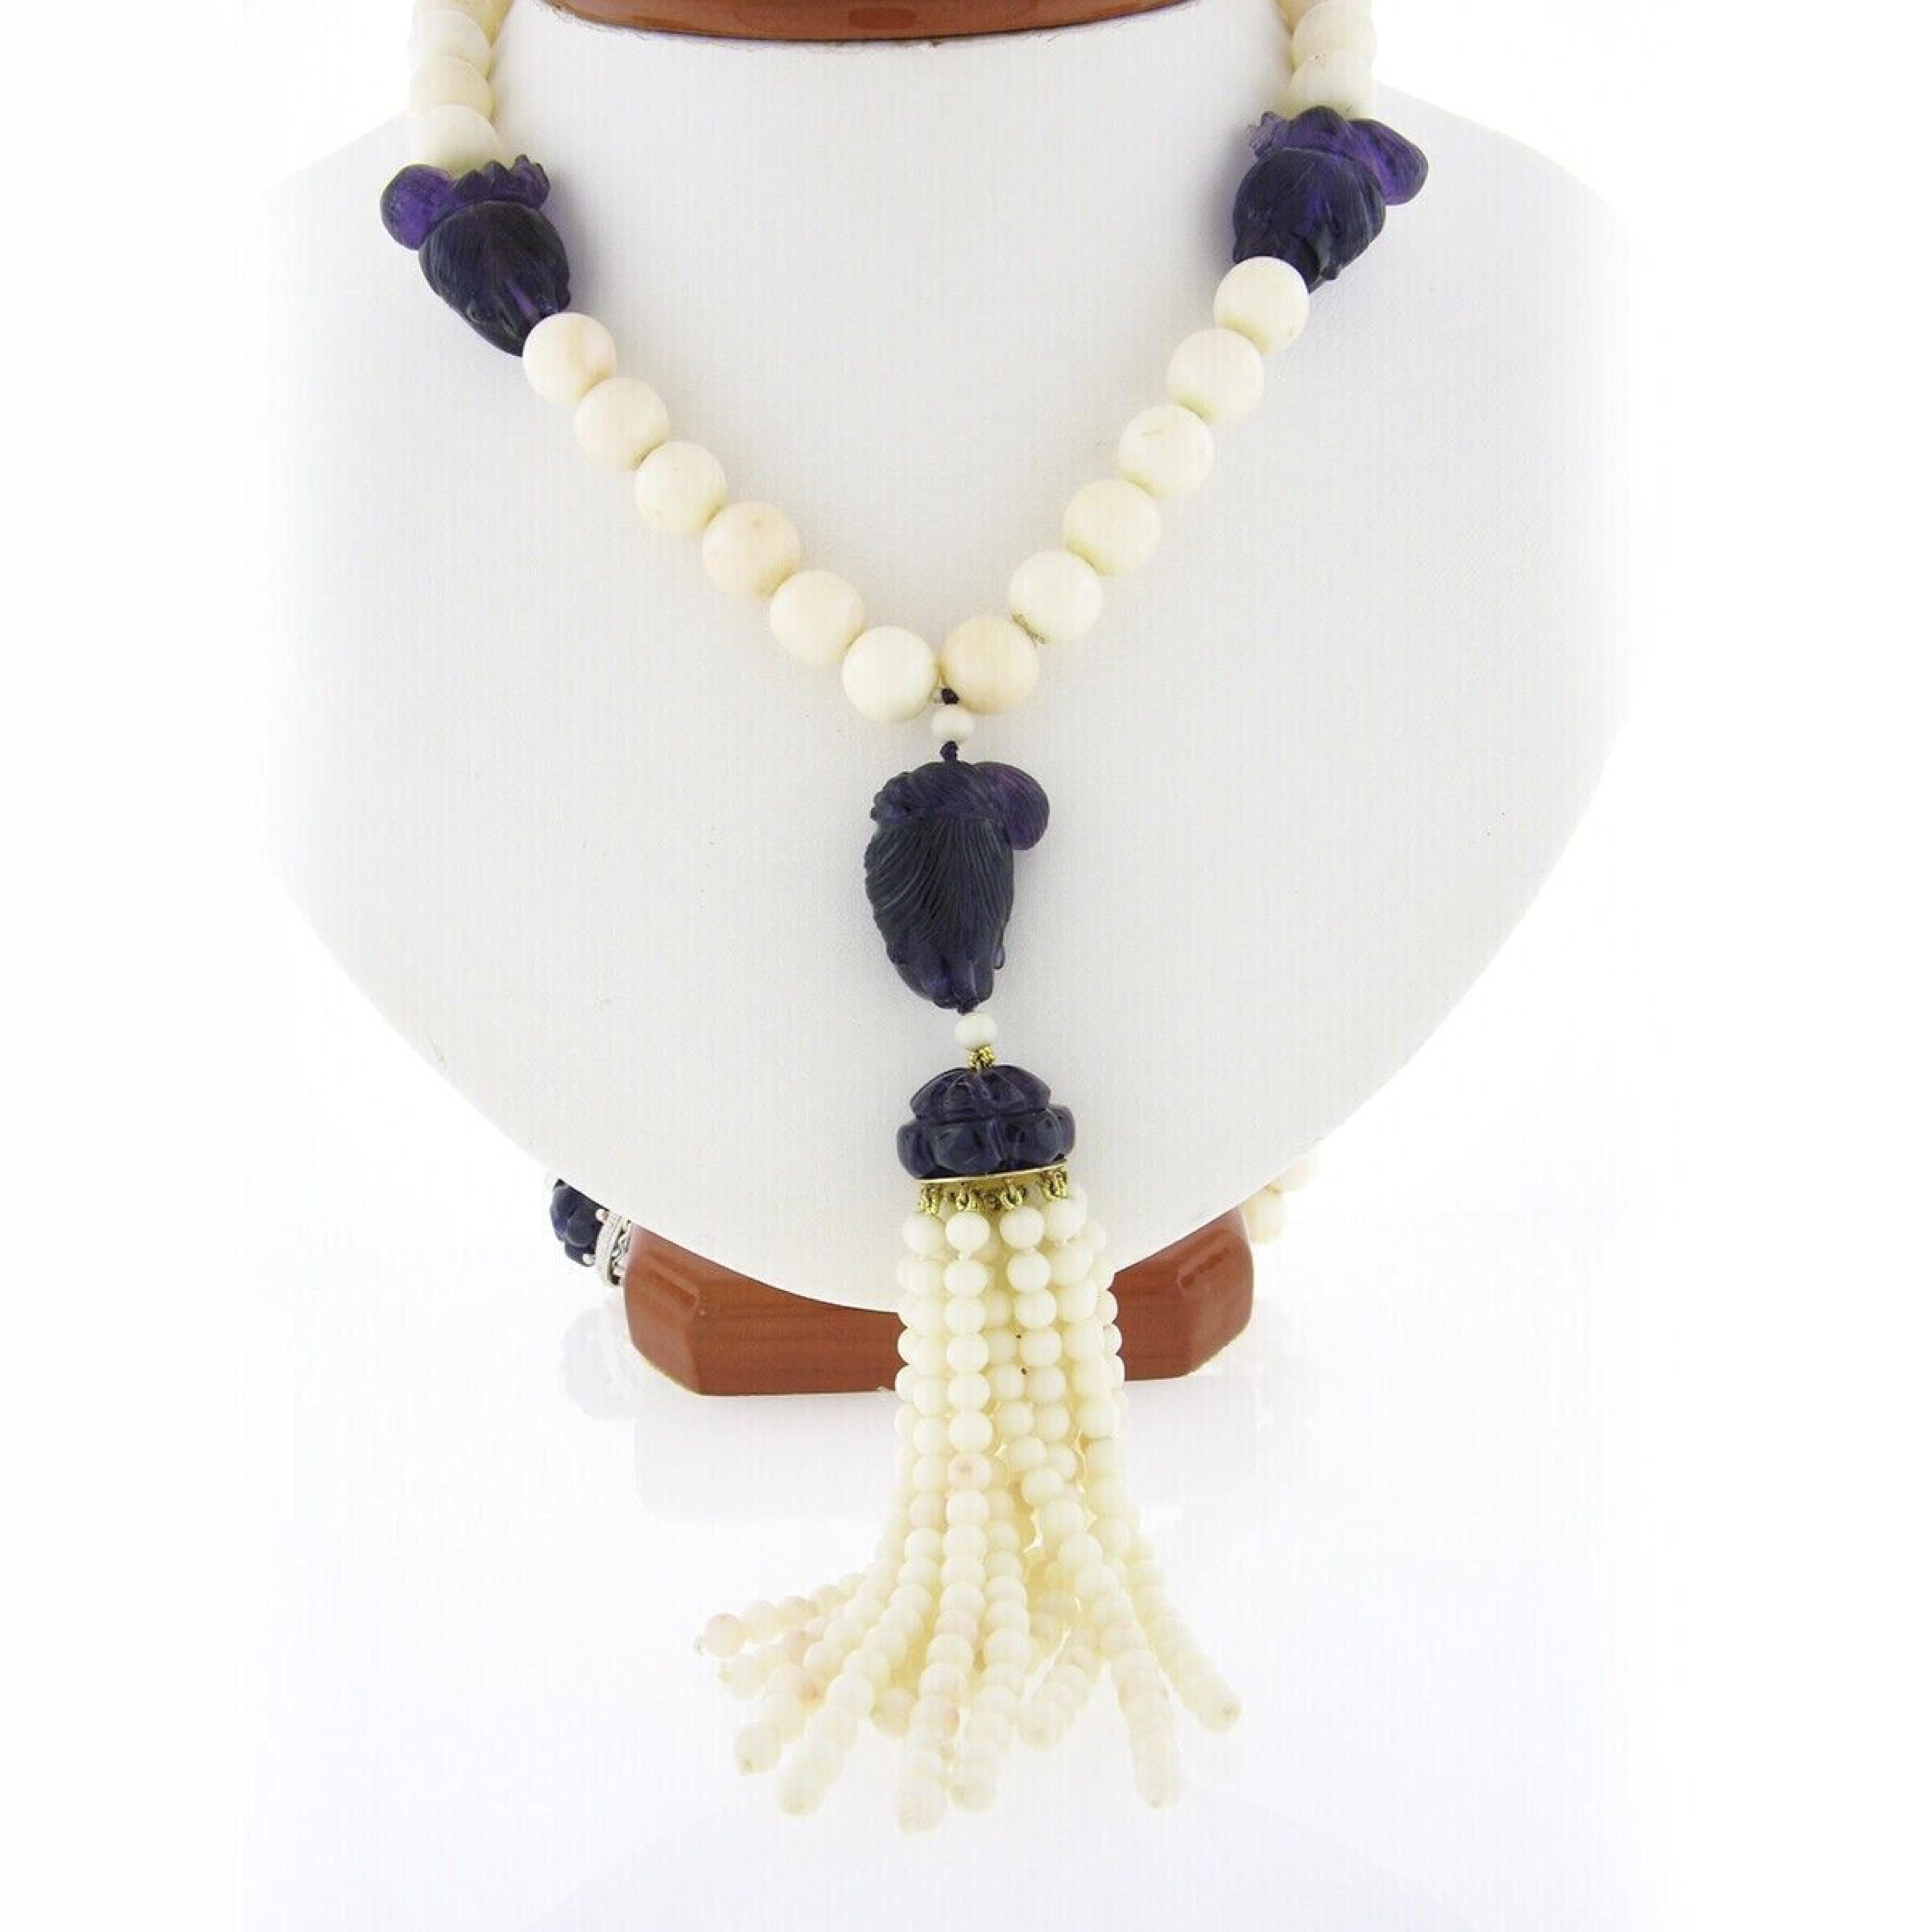 Hier haben wir eine absolut prächtige, lange, Vintage Engelshaut Korallen Perlen Strang Halskette, die unglaubliche geschnitzte Amethyst Steine ordentlich in der gesamten stationiert verfügt. Drei runde Engelshaut-Korallenperlen wurden nach dem